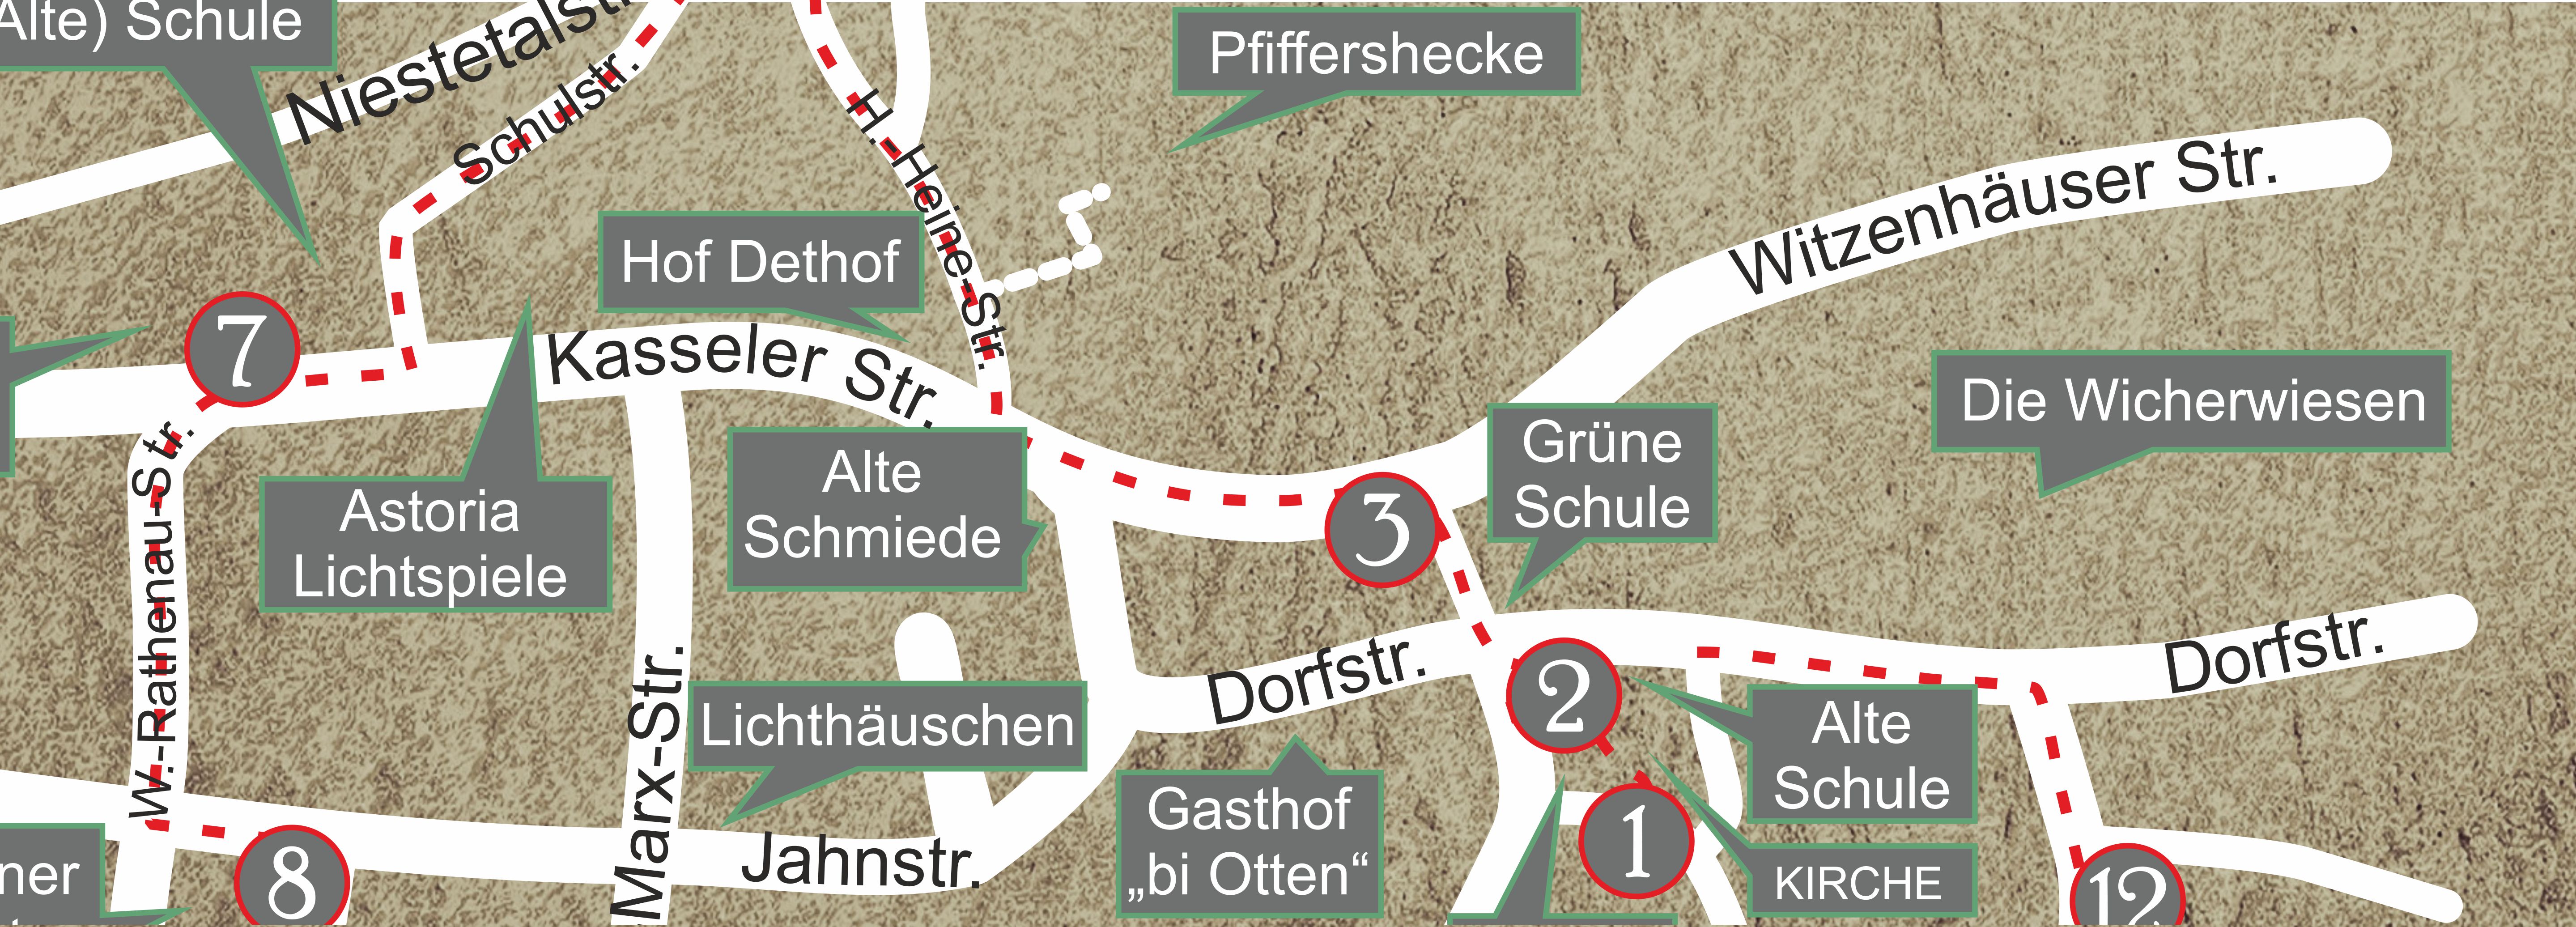 Karte mit der Tafel 2 am Dorfplatz und der Tafel 3 an der Witzenhäuser Str.